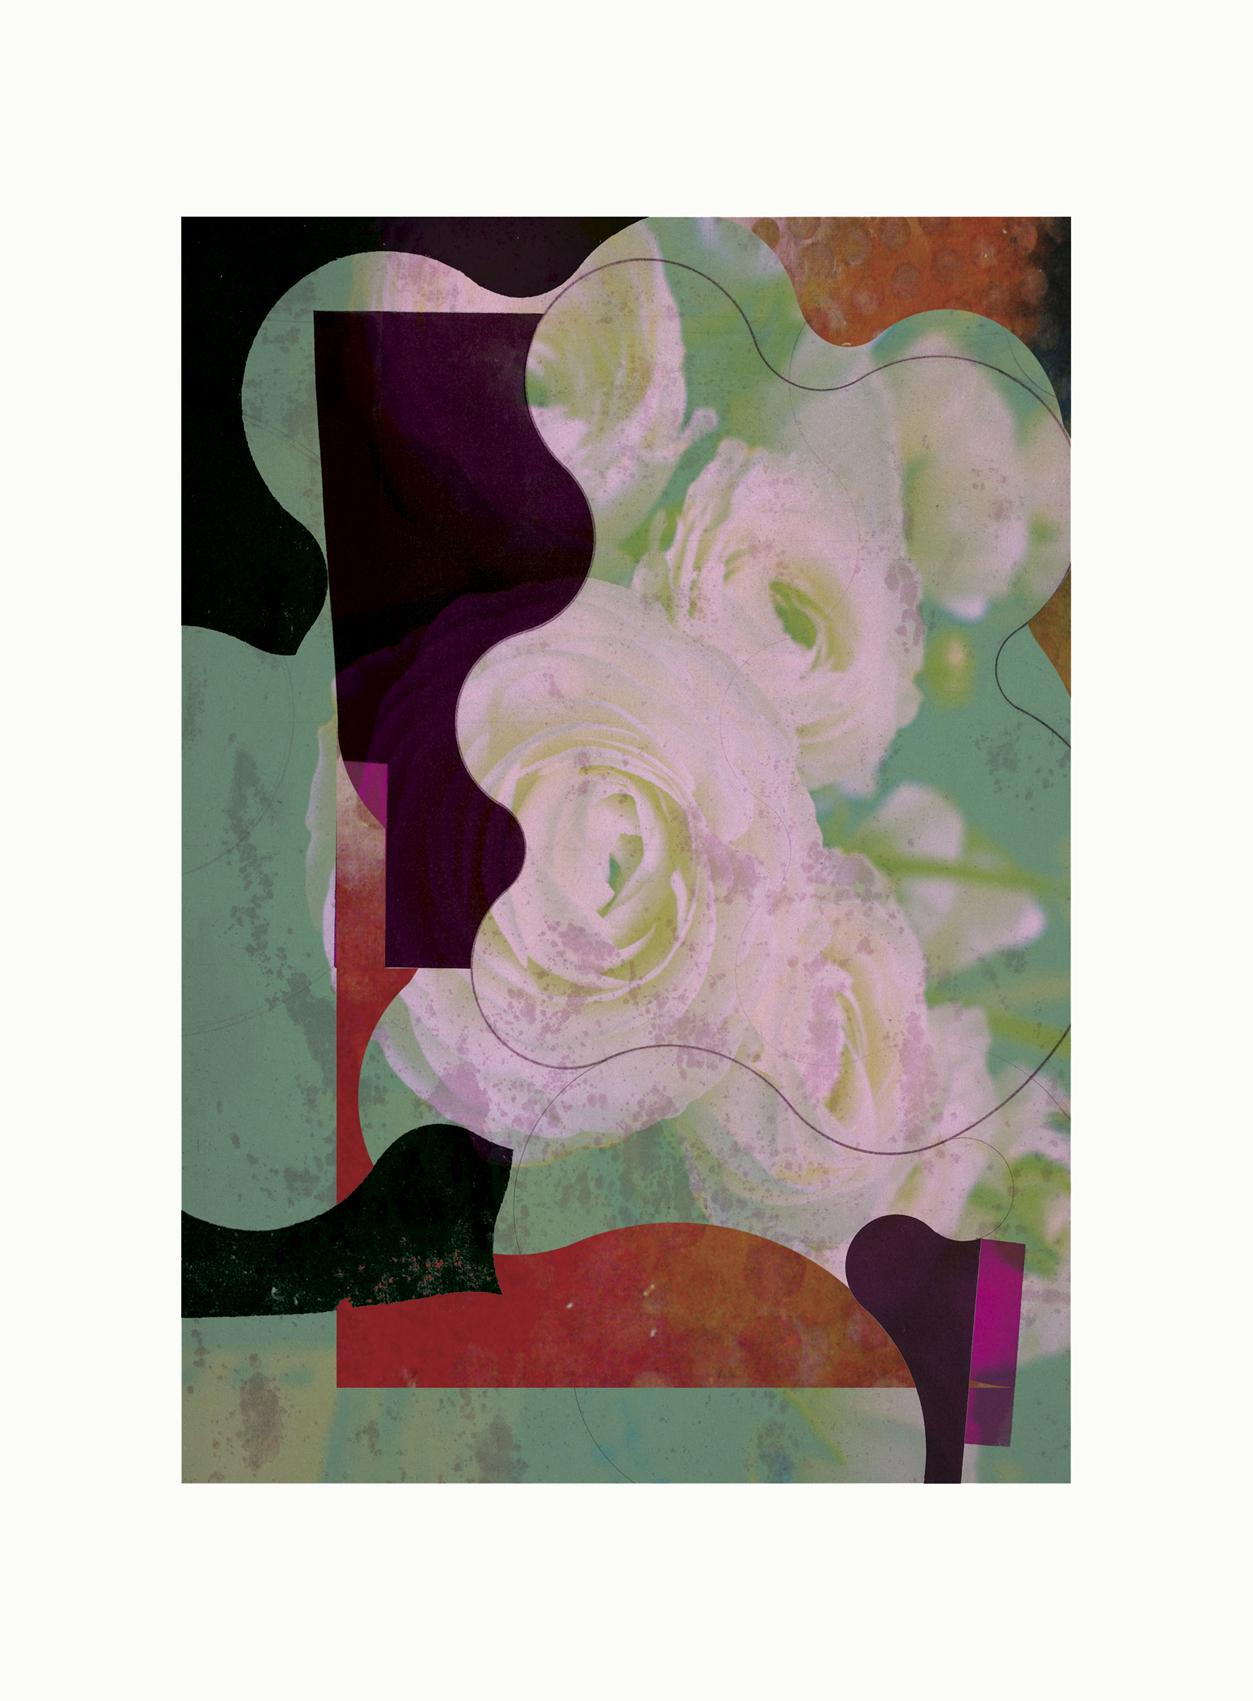 Blumen8-Zeitgenössisch, Abstrakt, Gestuell, Street Art, Pop Art, Moderne, Geometrisch – Mixed Media Art von Francisco Nicolás